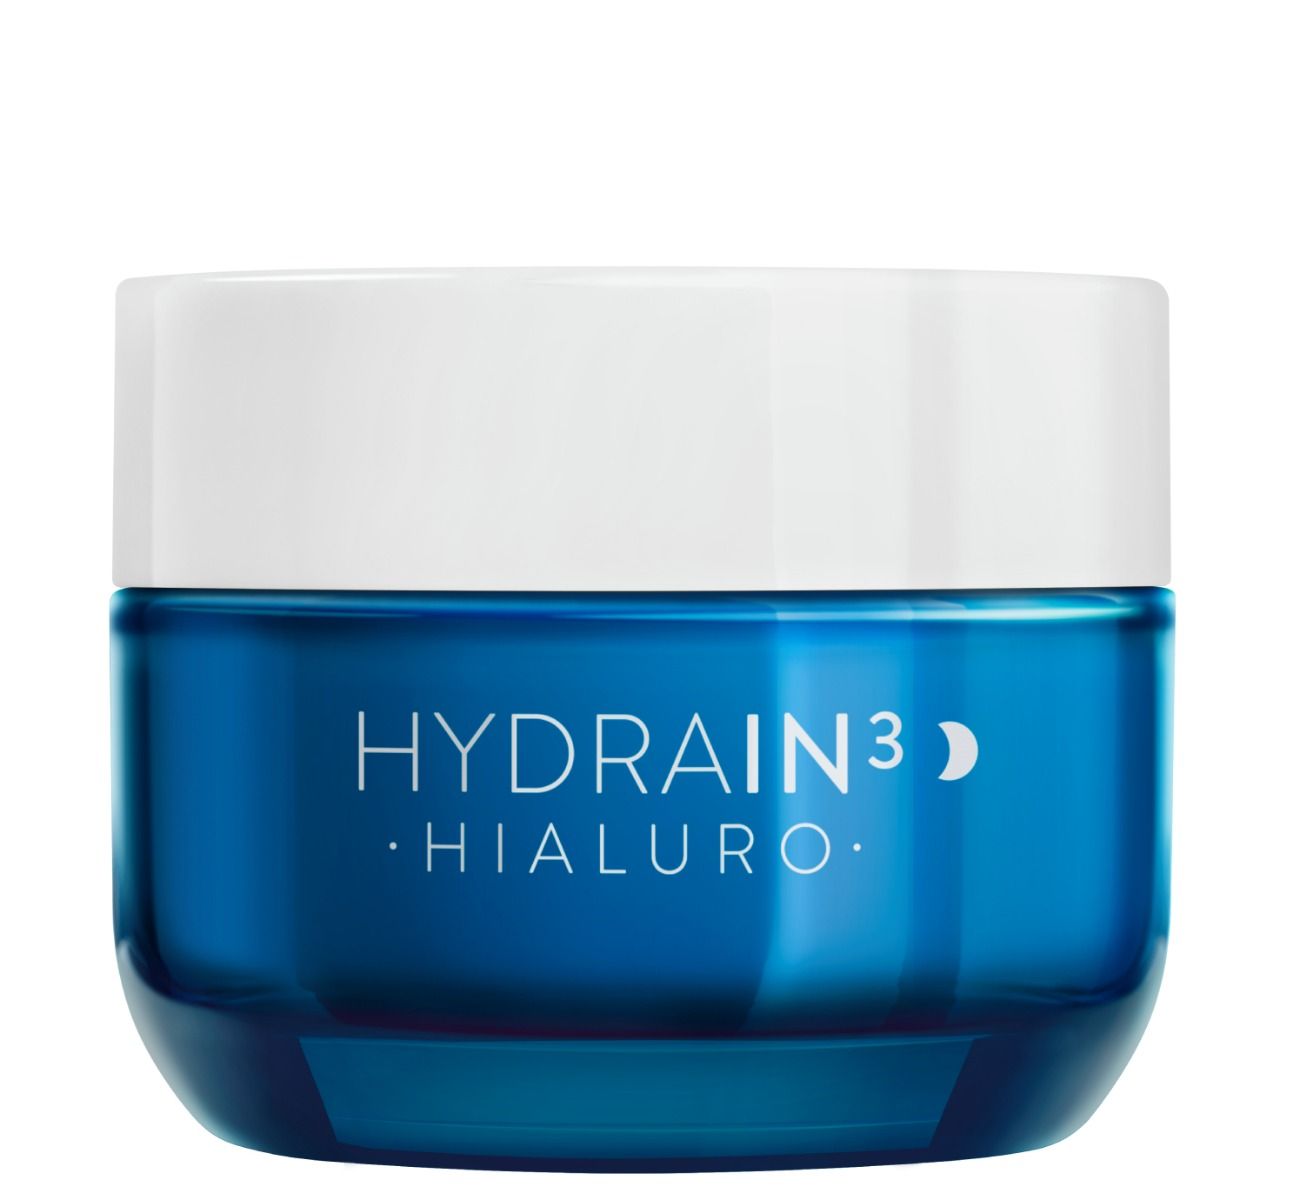 Dermedic Hydrain3 Hialuro крем для лица на ночь, 50 ml dermedic масло hydrain3 hialuro ультра увлажняющее для тела 225 мл